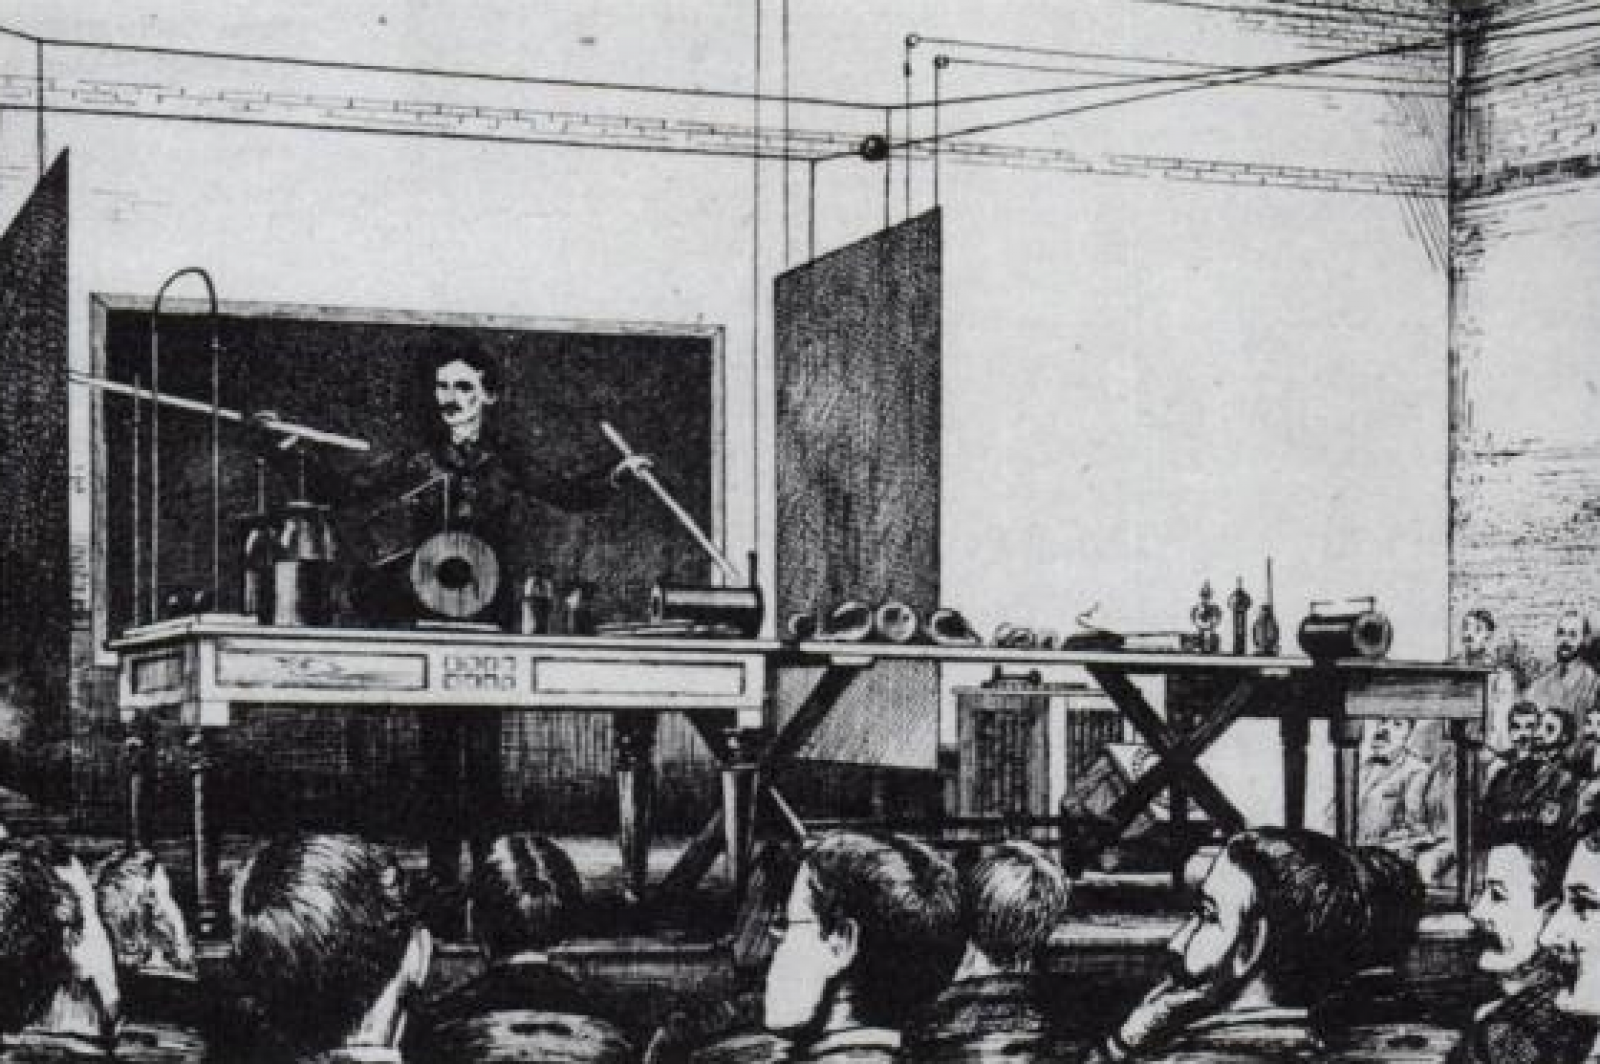 El canadiense Reginald Fessenden, con su equipo durante su retransmisión de radio desde Brant Rock el 24 de diciembre de 1906, en una imagen cedida por el archivo de Carolina del Norte (EE.UU.) y facilitada por la Unión Internacional de Telecomunicaciones de la ONU.